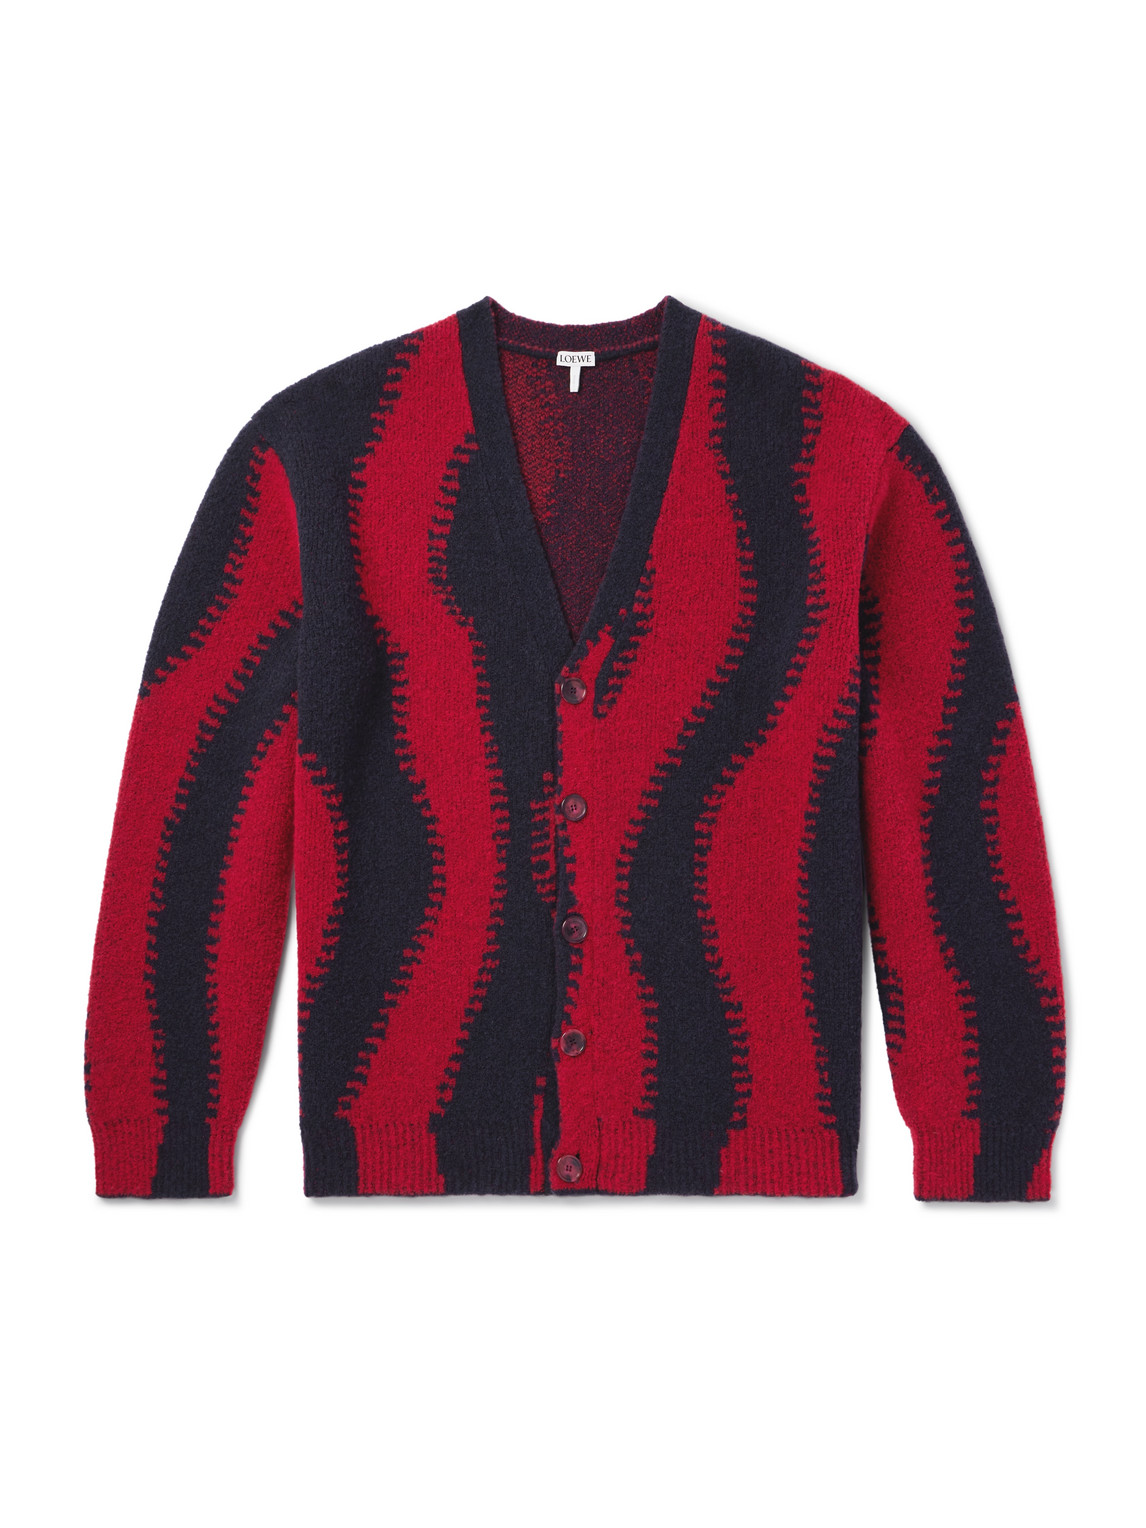 LOEWE - Jacquard-Knit Wool-Blend Cardigan - Men - Red - XS von LOEWE